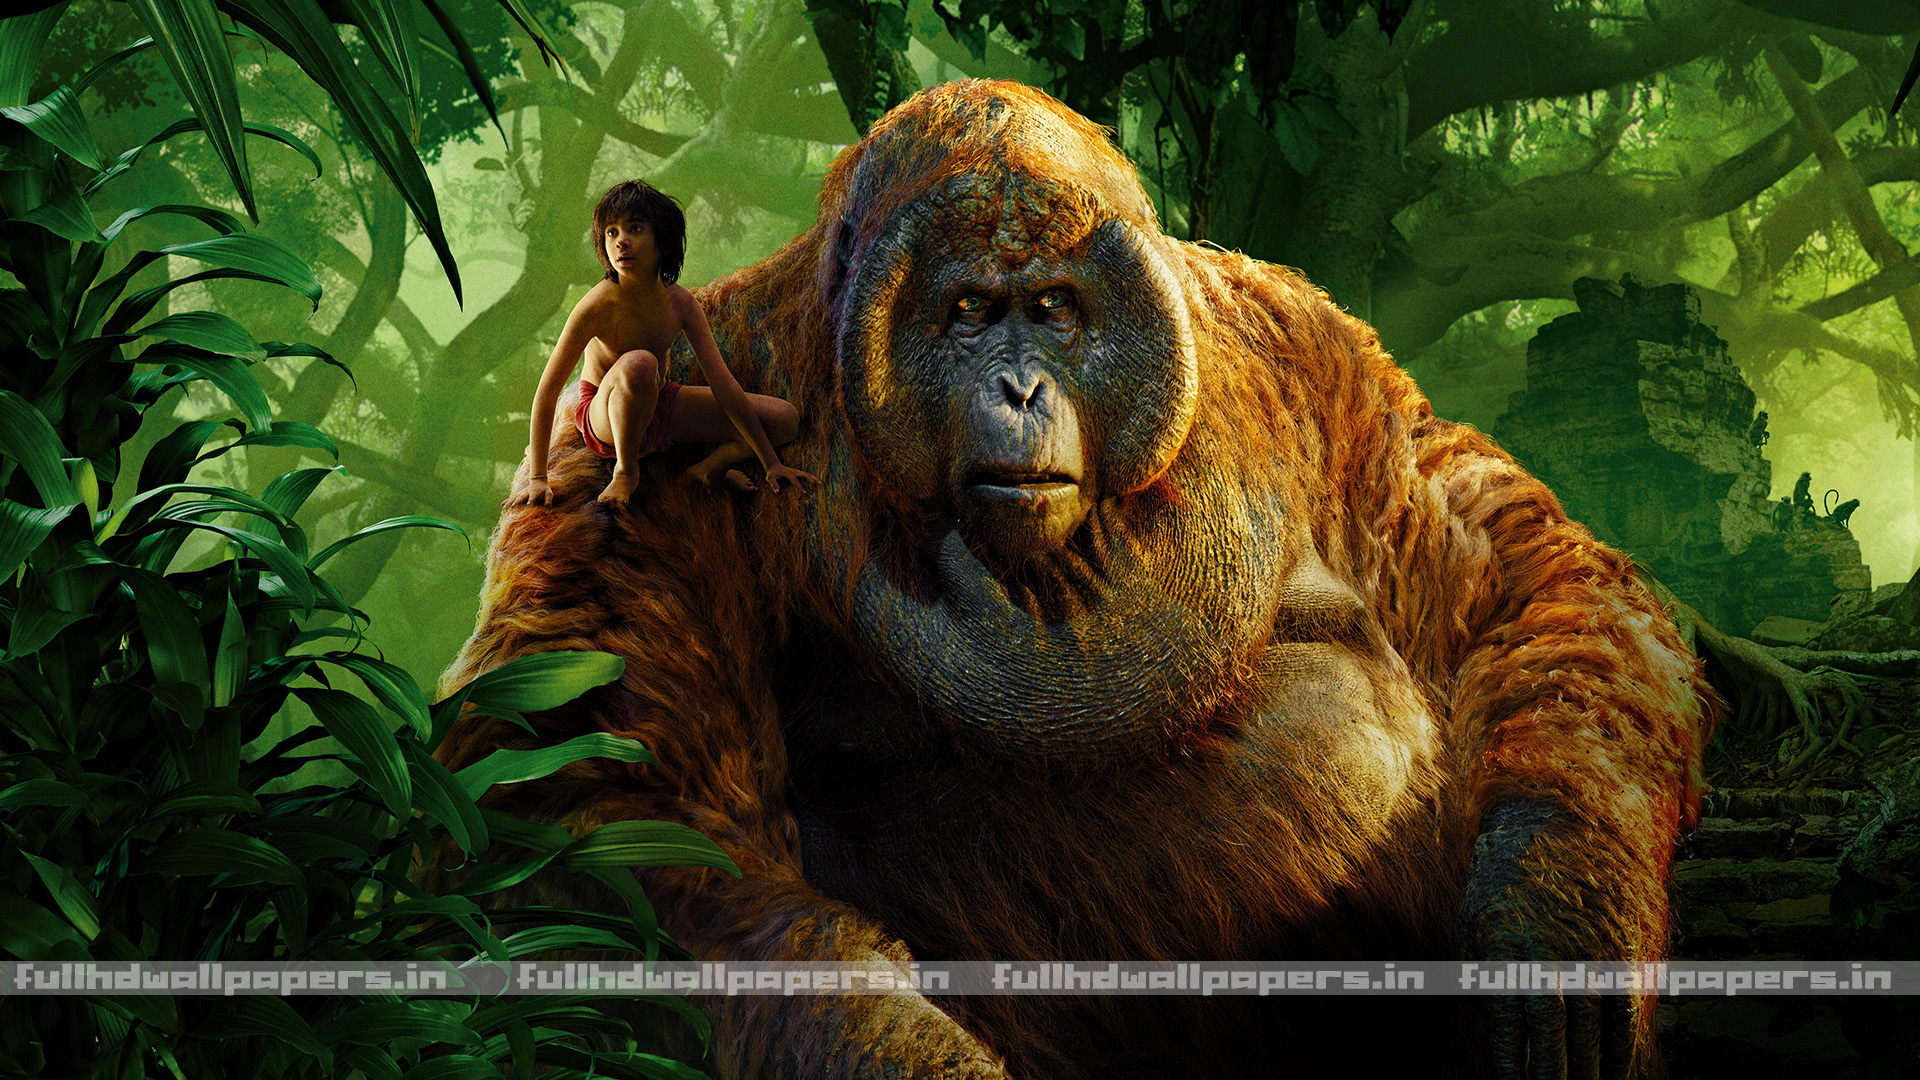 Mogli Jungle Book Full HD Wallpaper